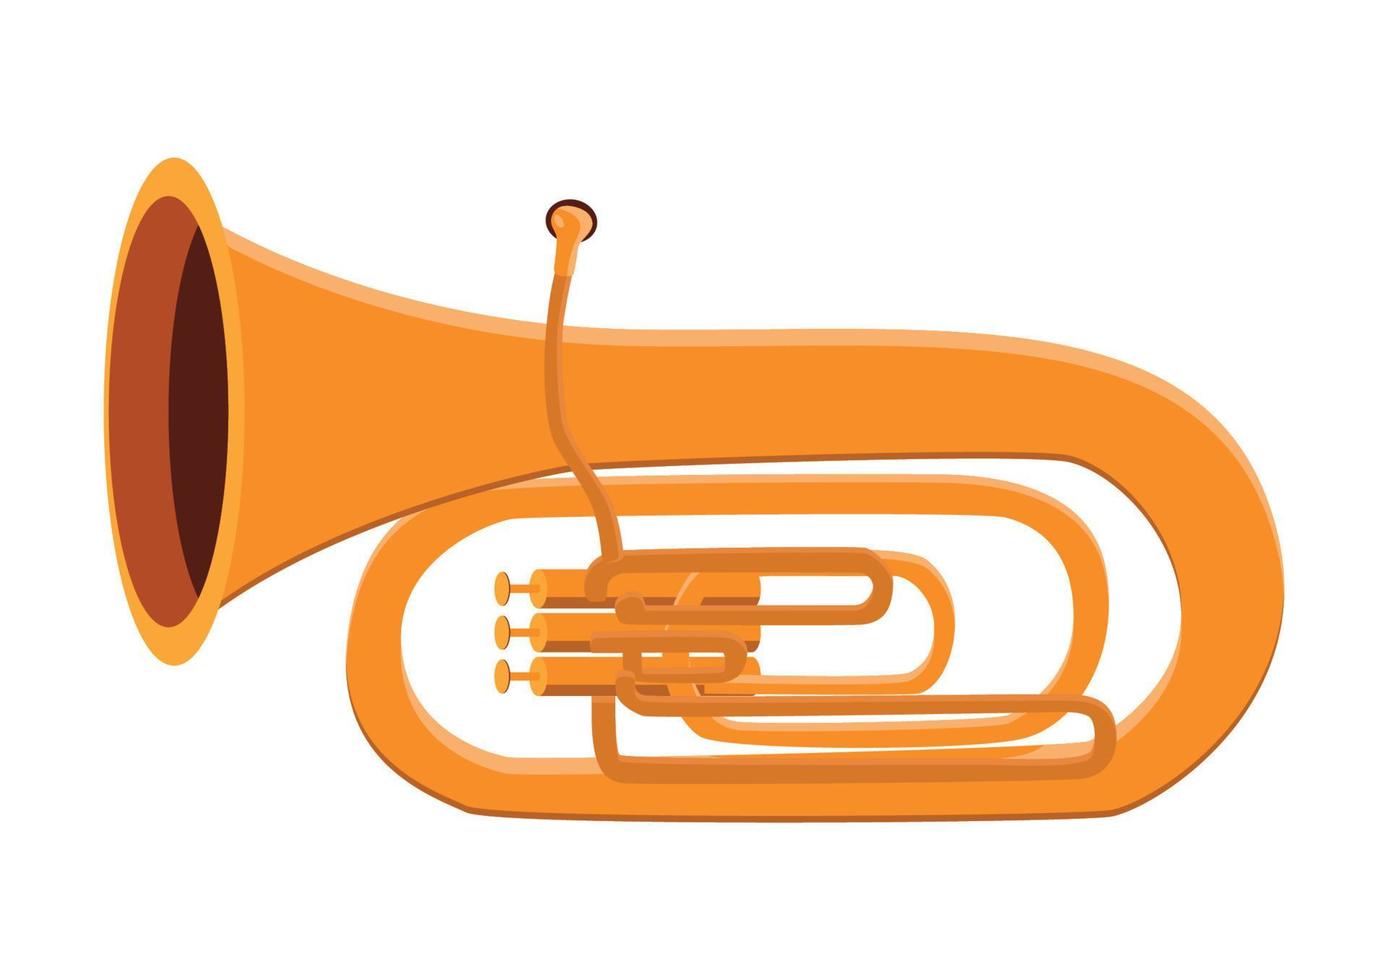 diseño vectorial de tuba dorada. imágenes prediseñadas de tuba. tuba instrumento de viento musical ilustración de vector de estilo de dibujos animados plana aislado sobre fondo blanco